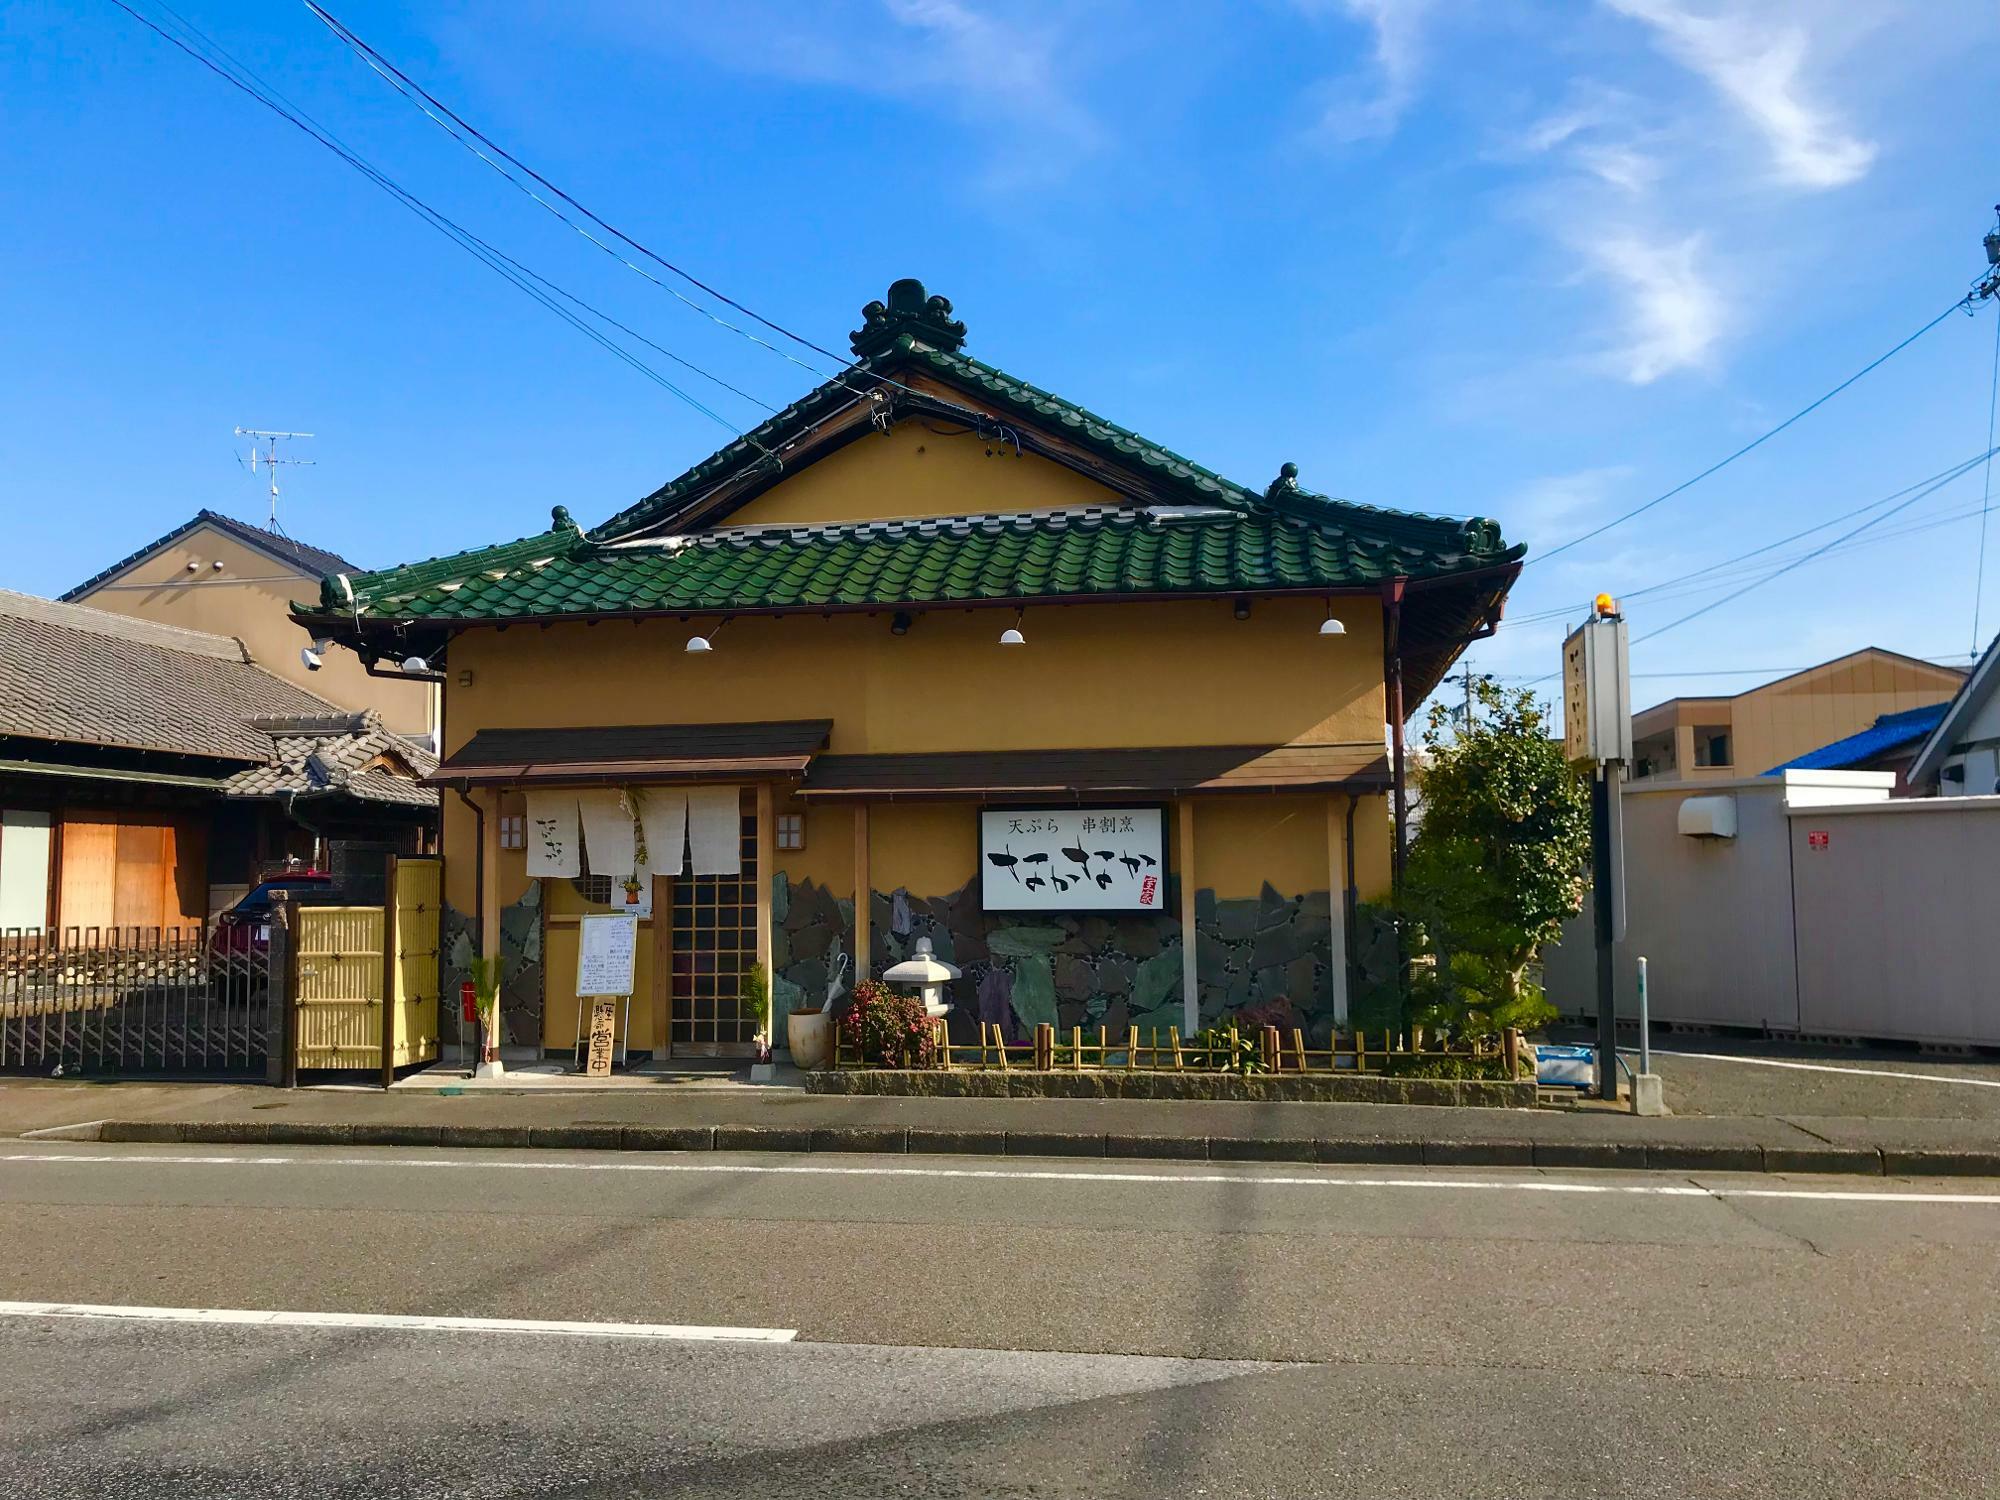 こじんまりとした緑色の瓦葺屋根の日本家屋の外観